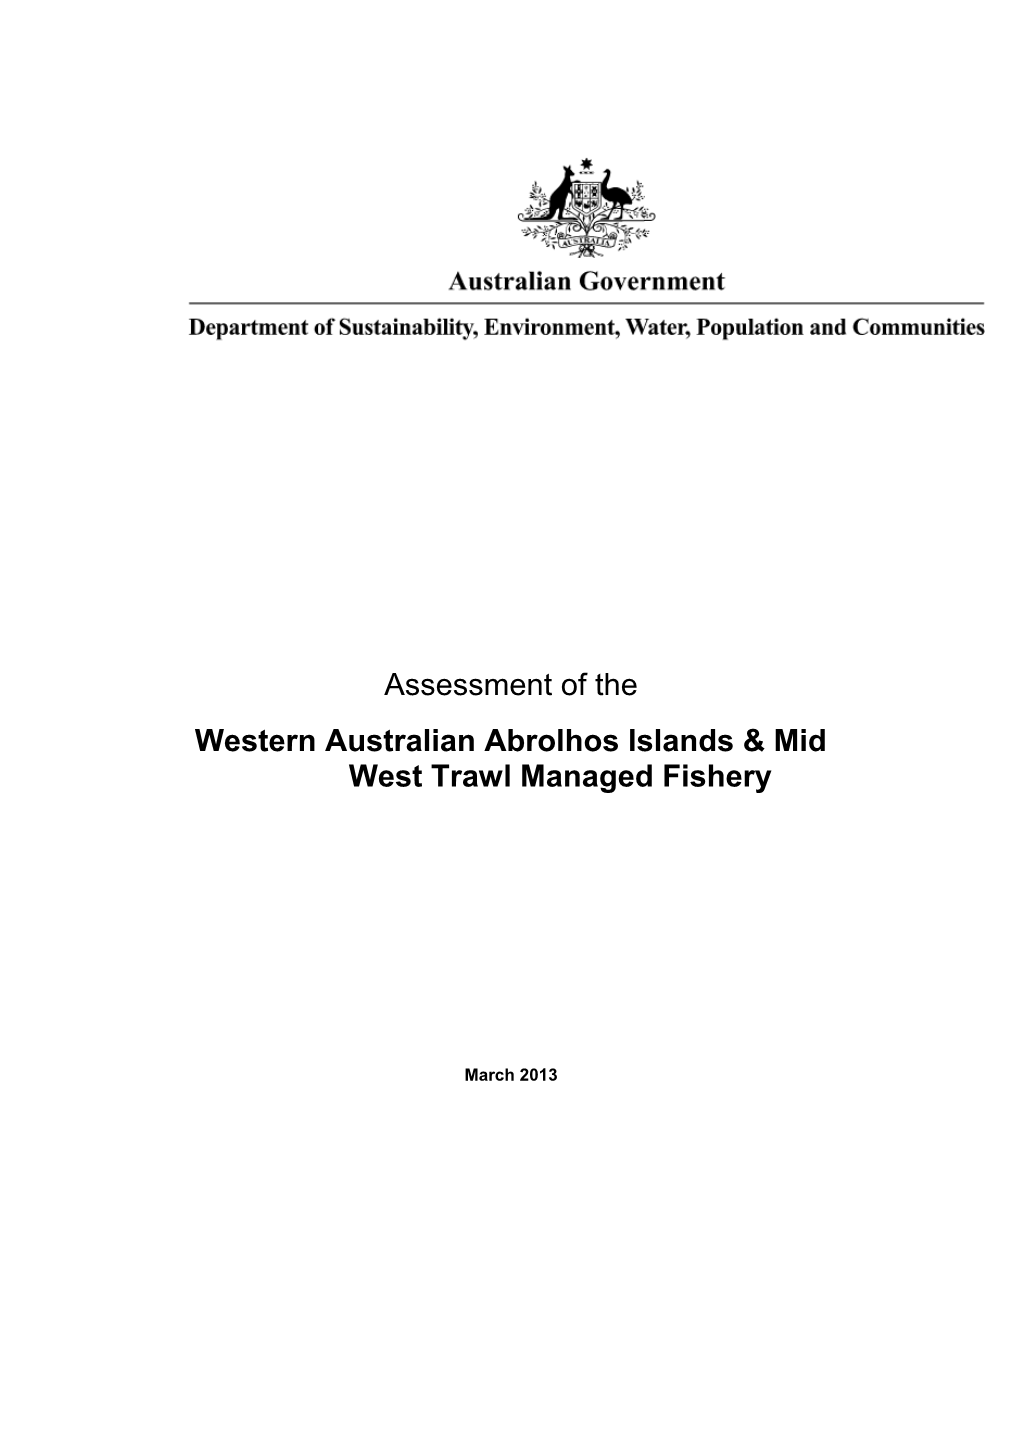 Western Australian Abrolhos Islands & Mid West Trawl Managed Fishery